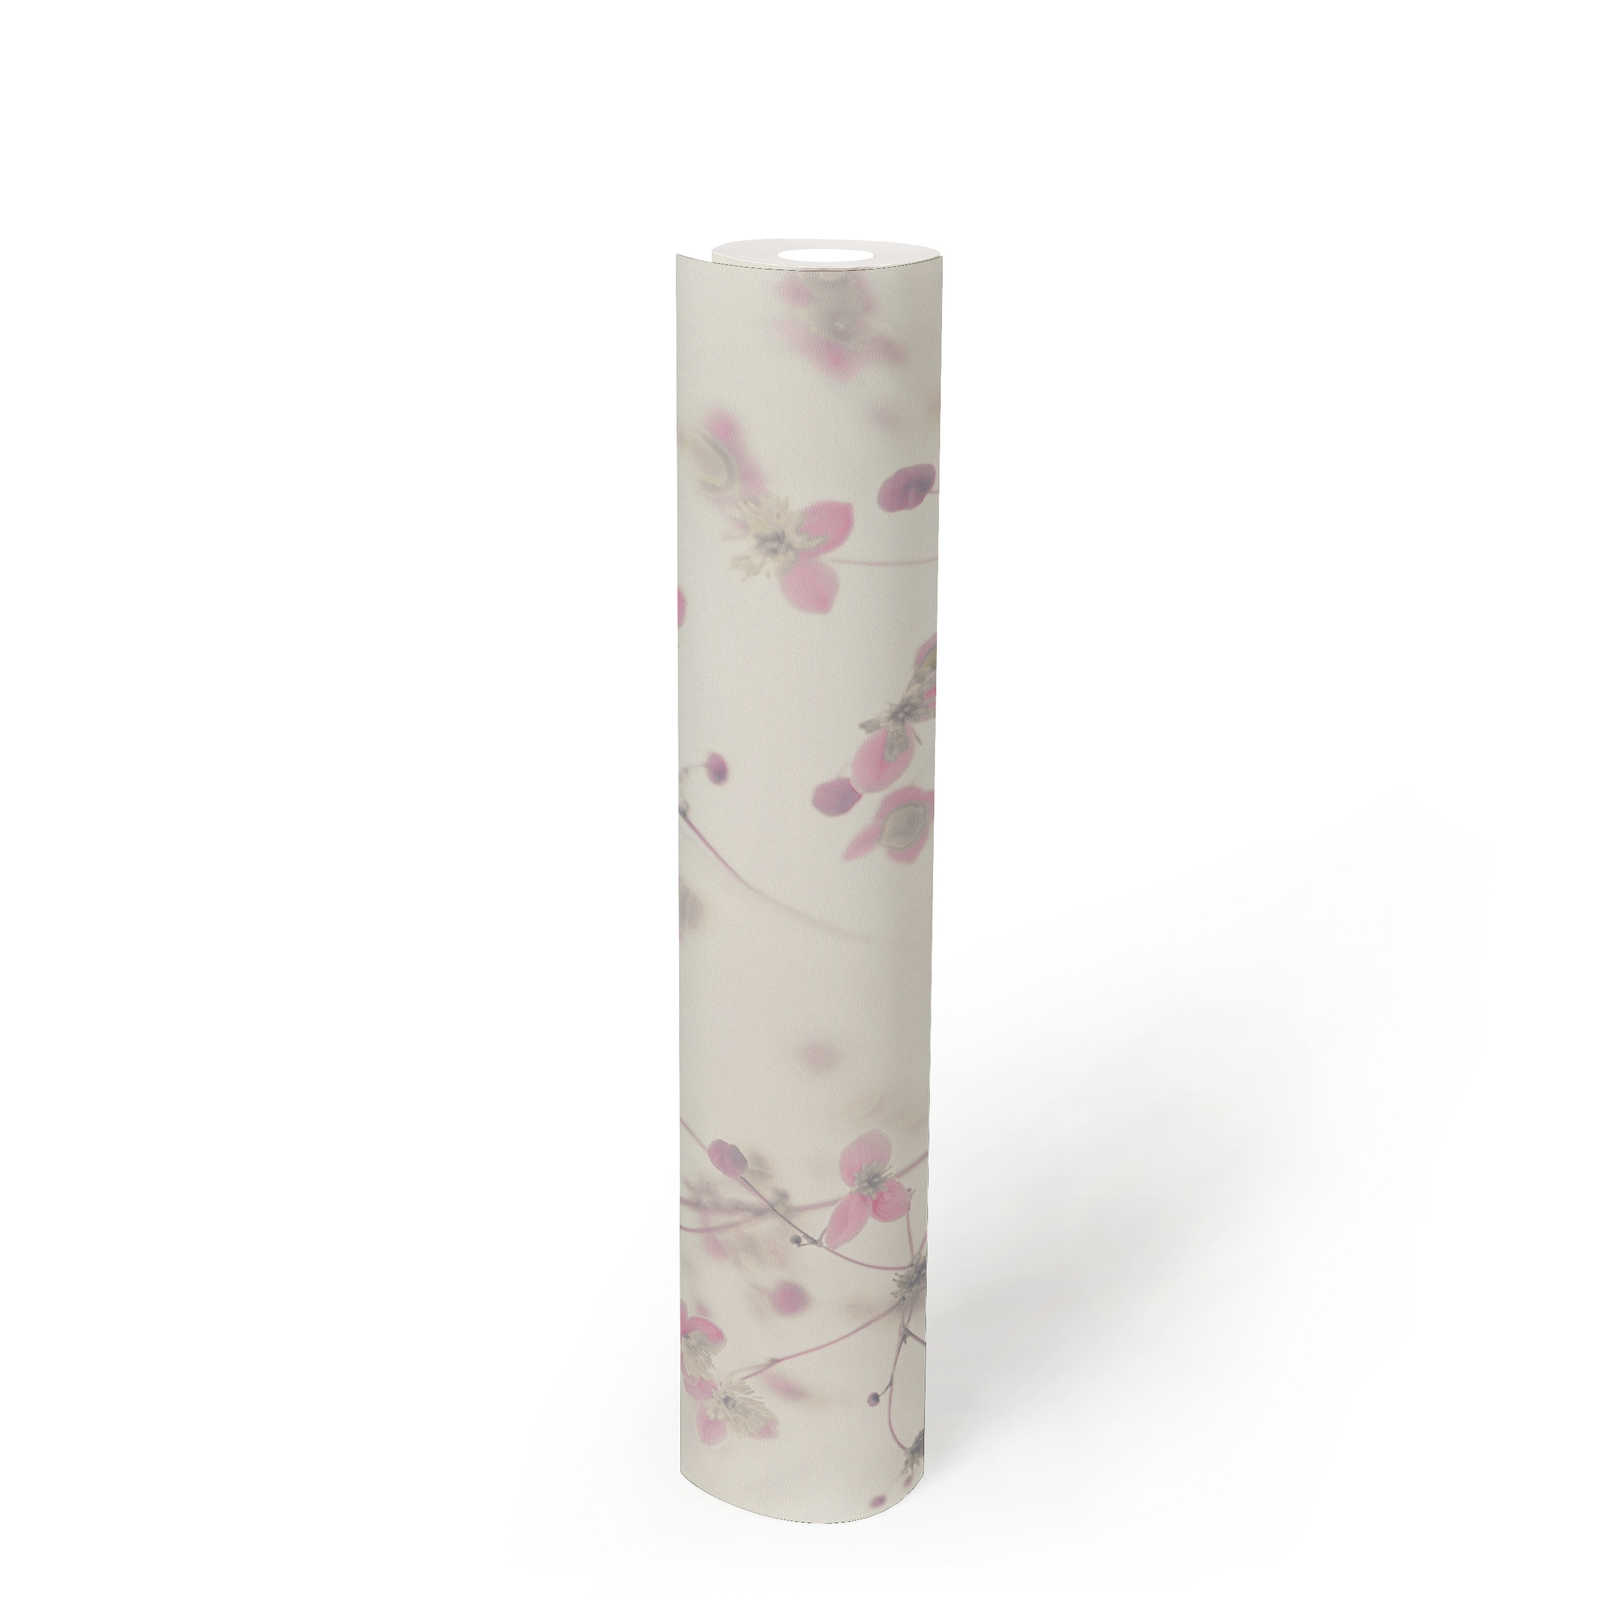             Moderne Landhaus Tapete Blumenmuster – Grau, Rosa
        